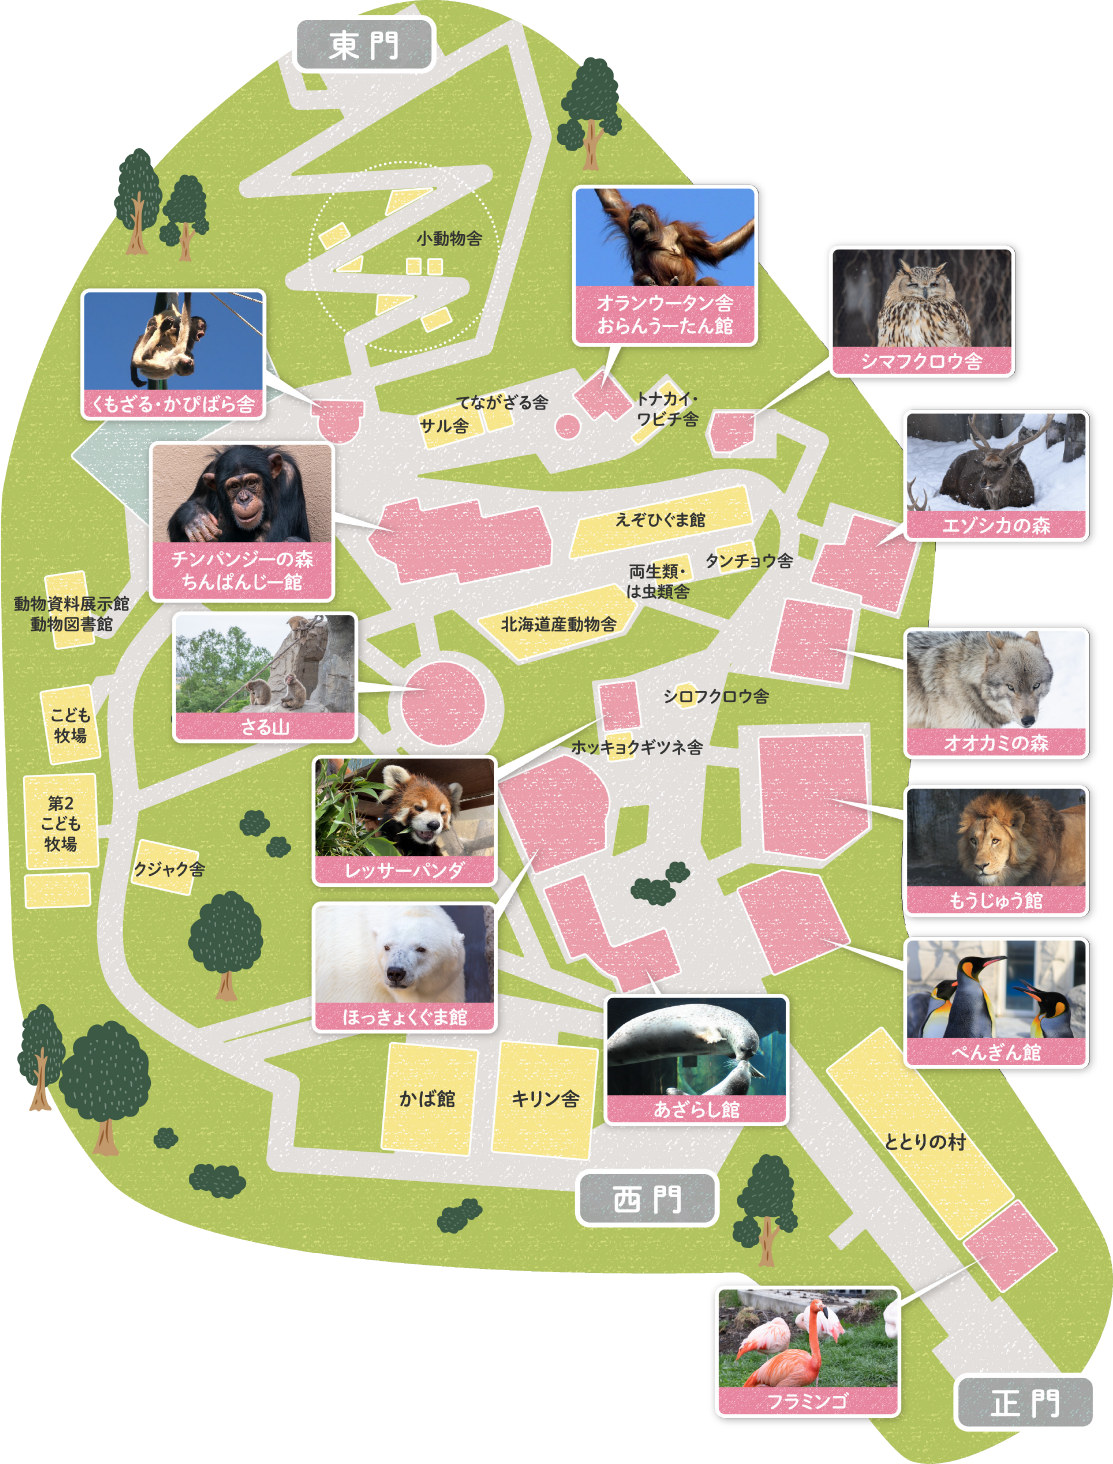 旭山動物園 園内マップ